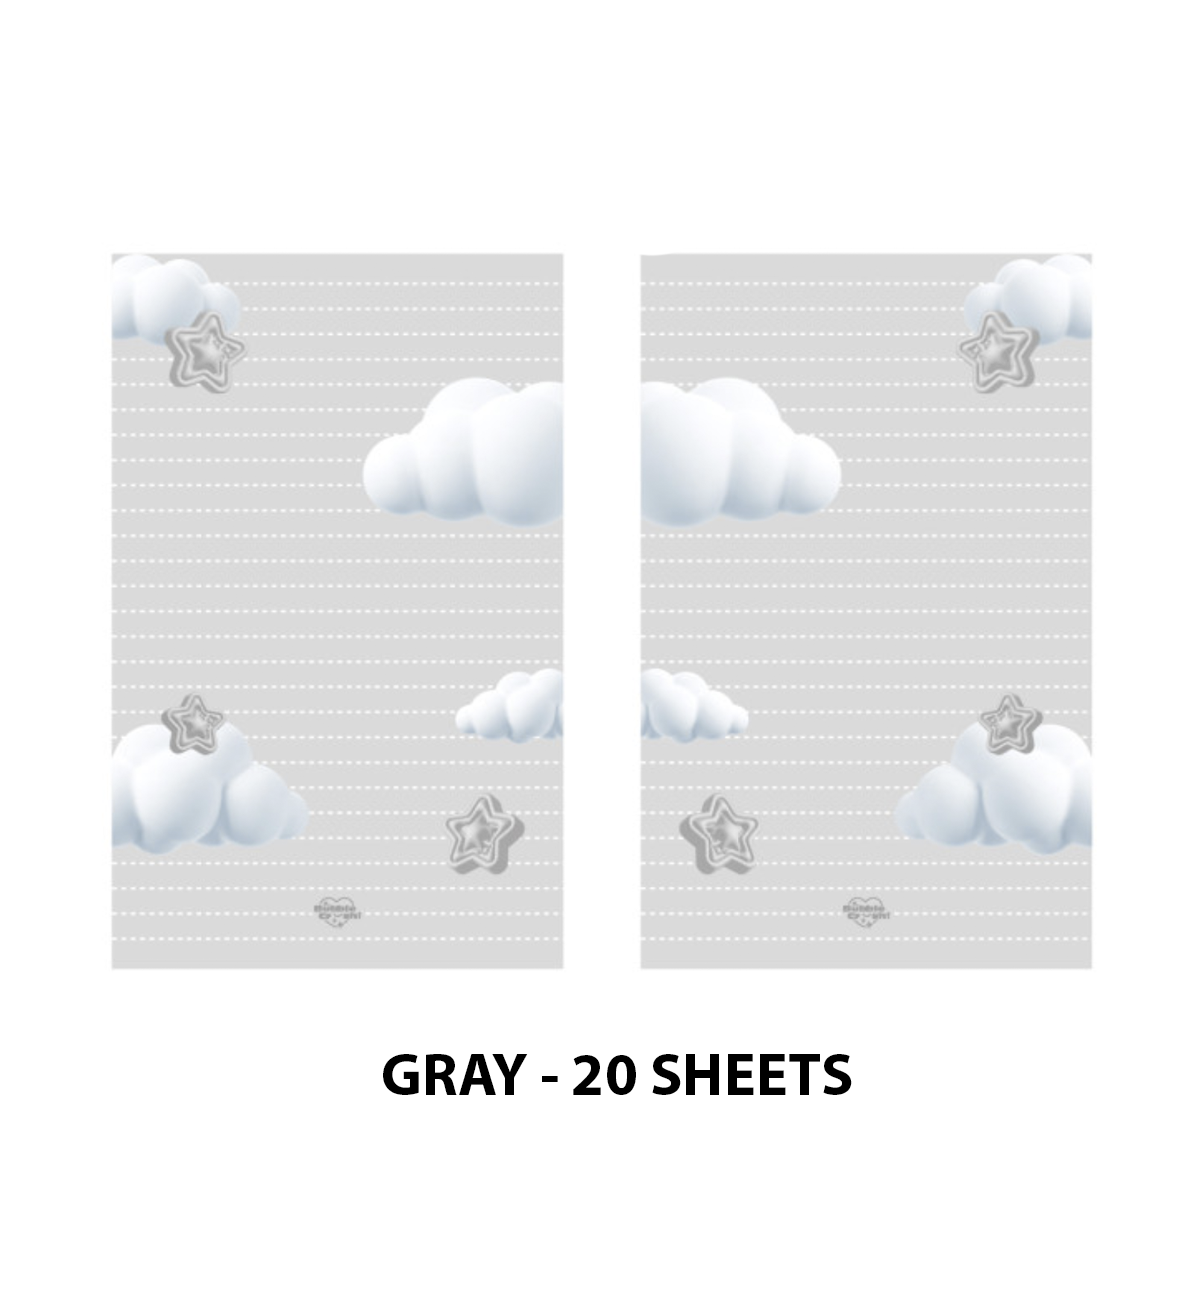 A7 3D Cloud Paper Refill